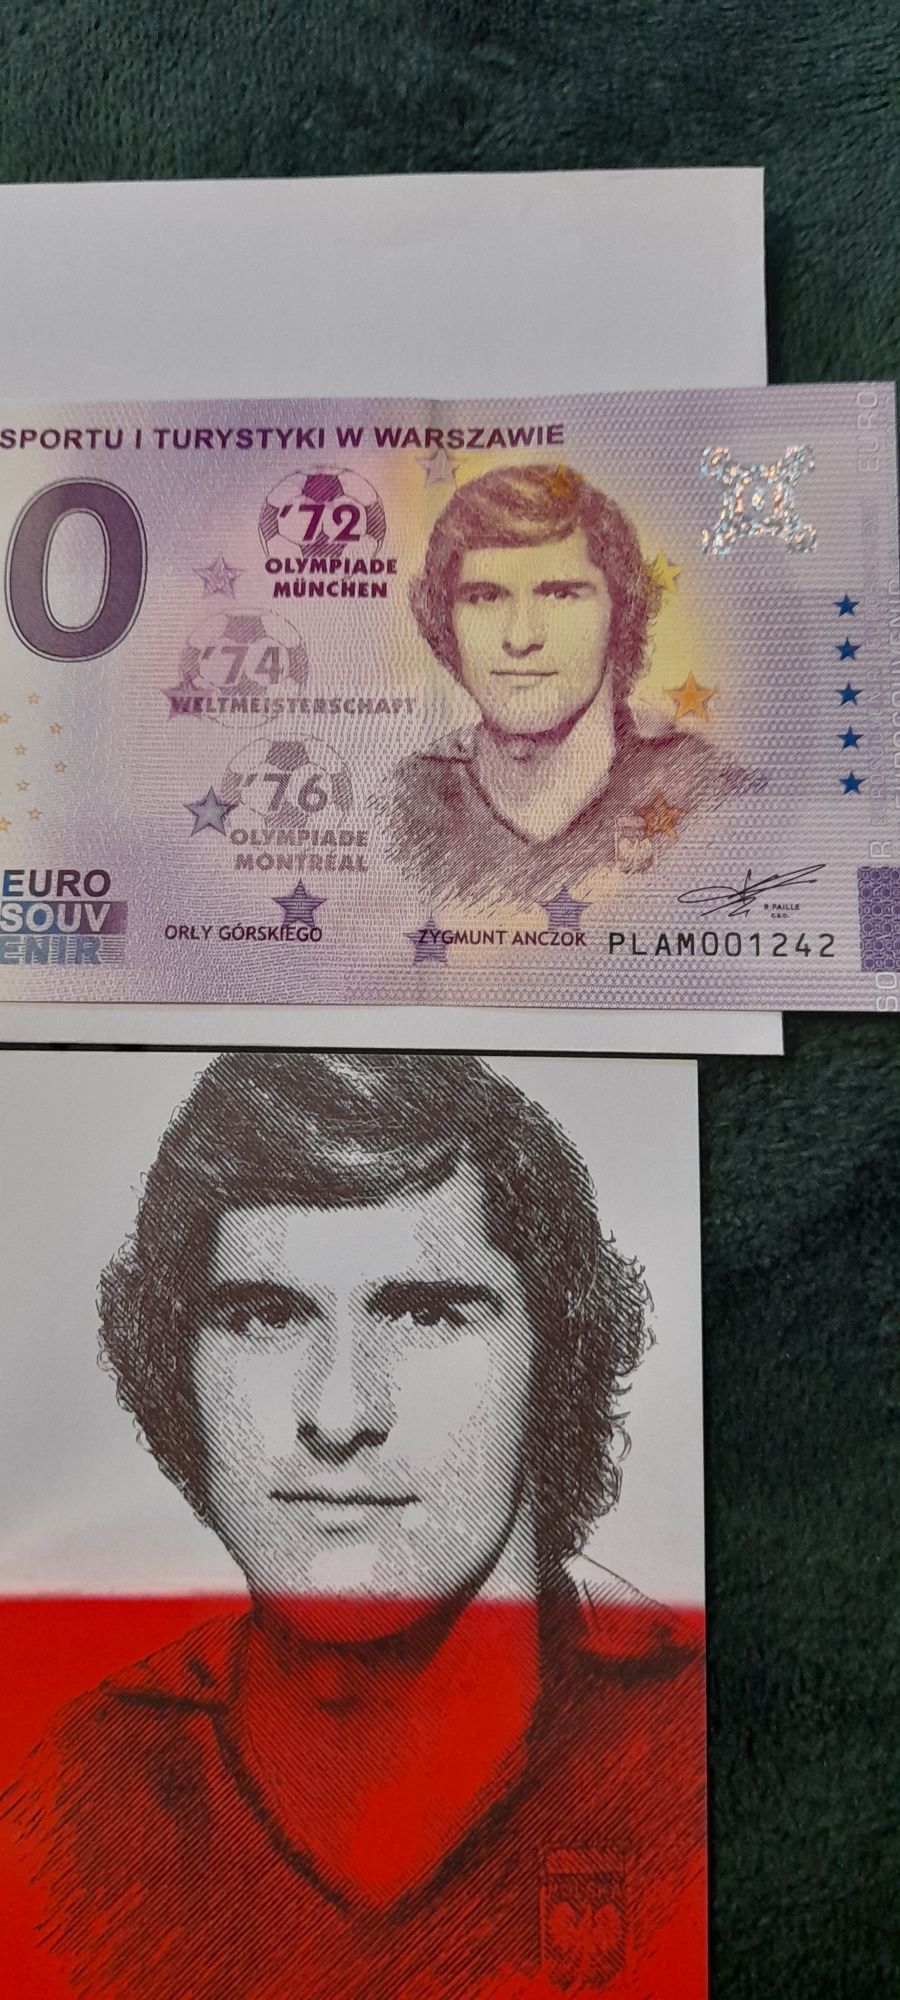 0 Euro Zygmunt Anczok